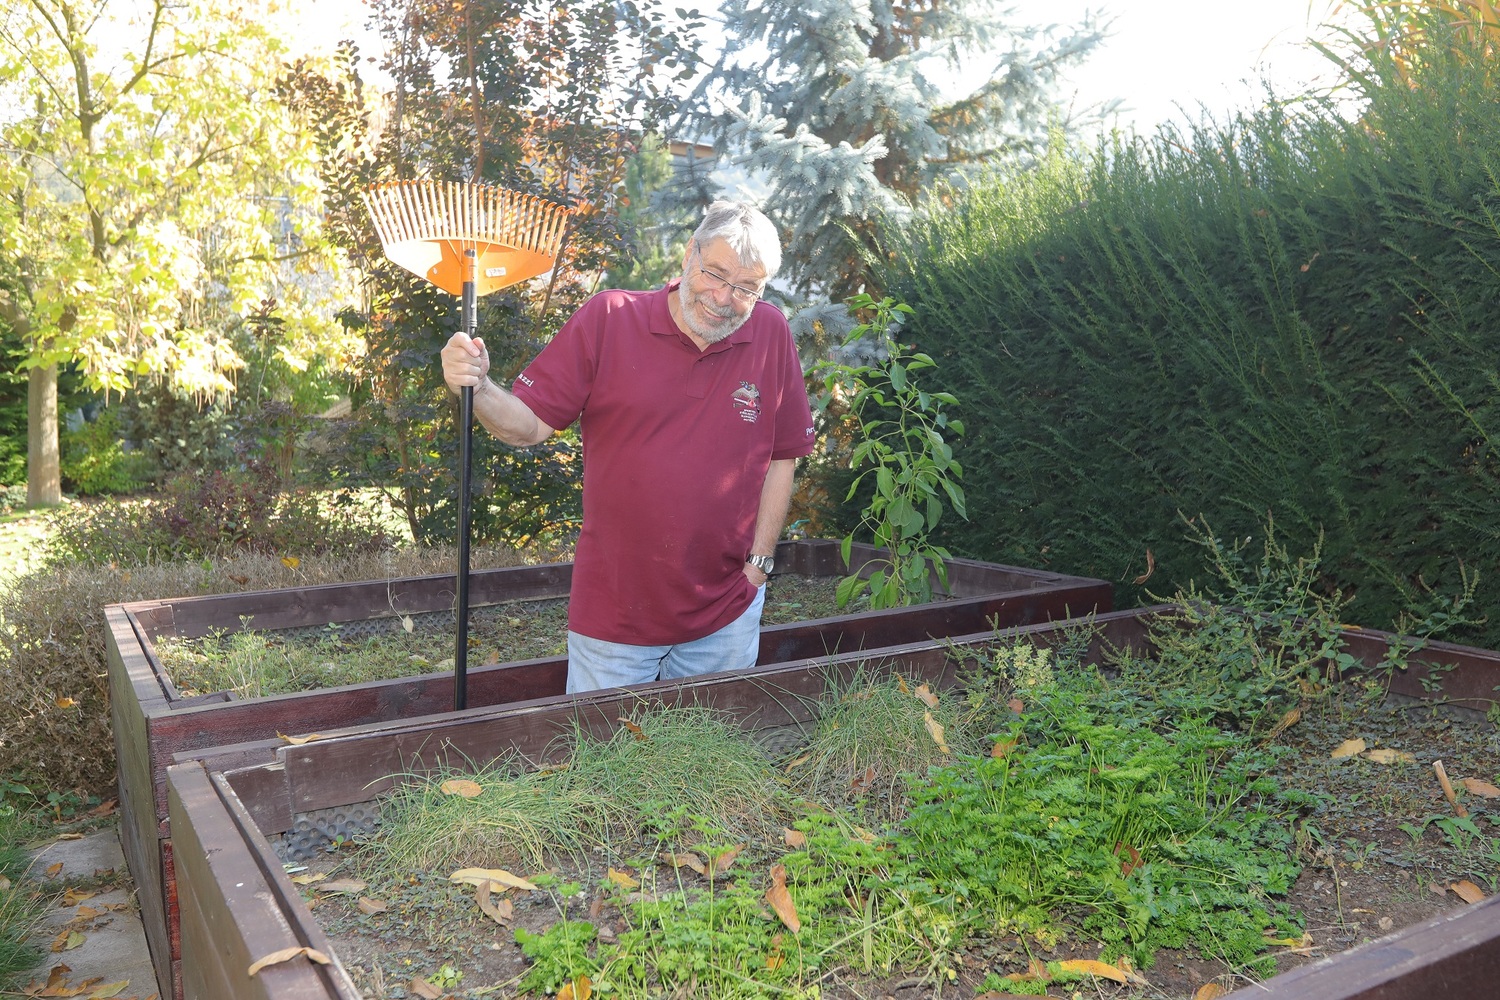 Zahradničení nepovažuje Radim Uzel za koníček, je to pro něj spíš nutnost, aby zahrada nějak vypadala.